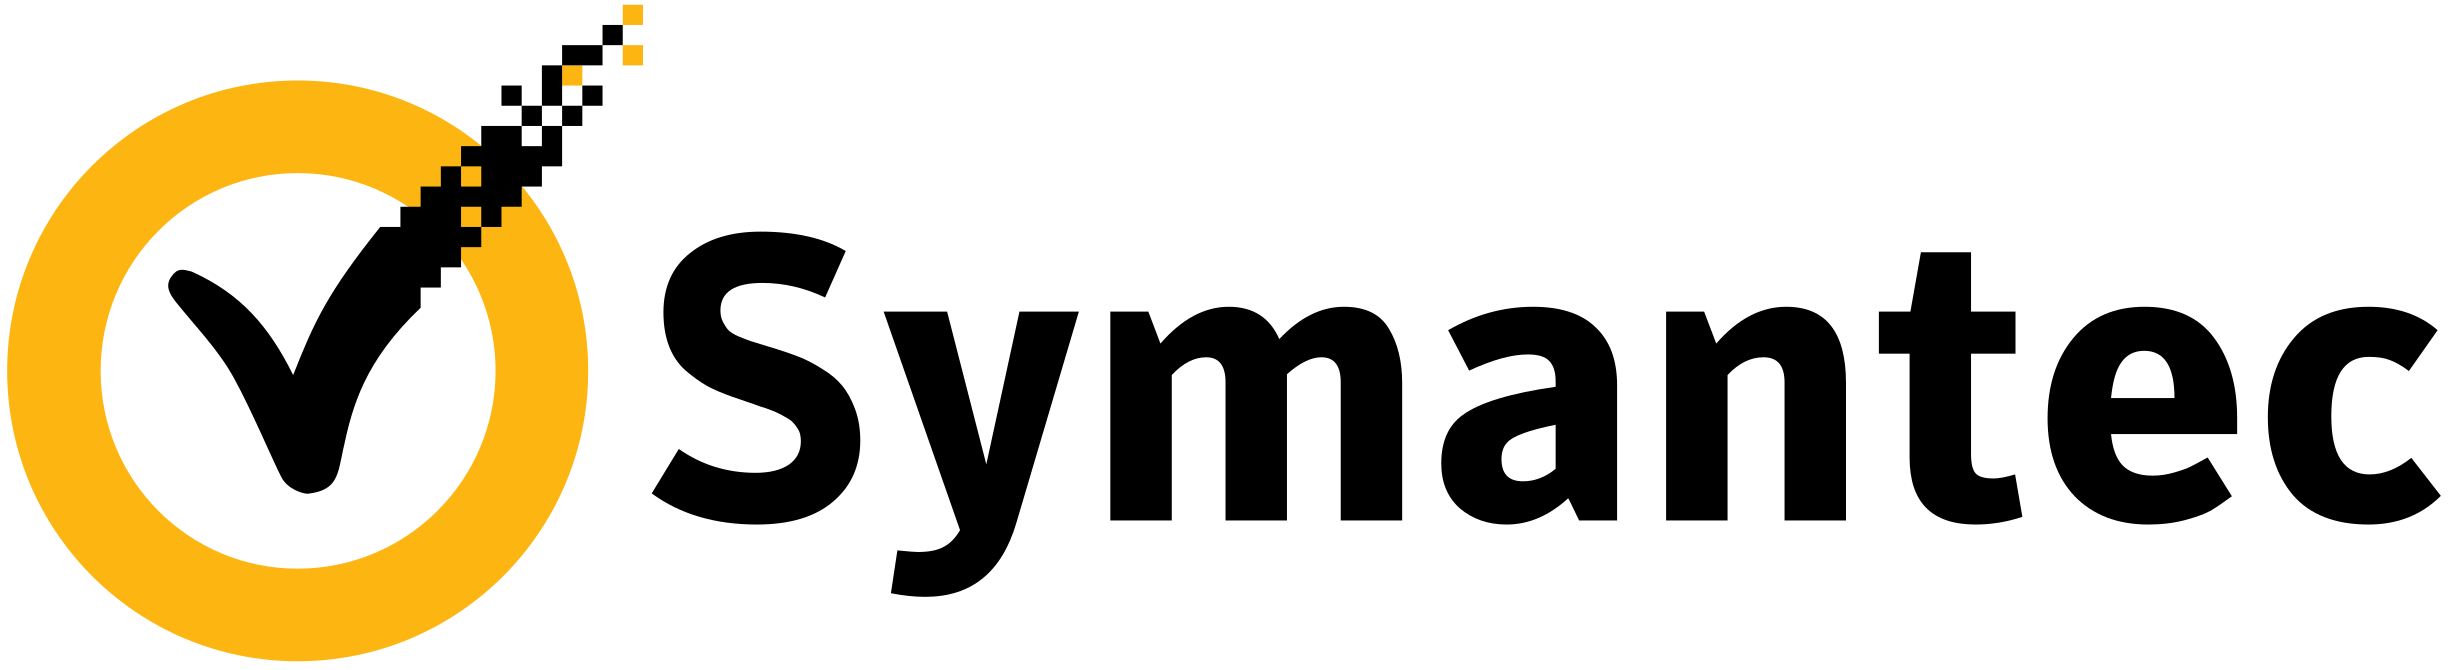 Symantec vendor logo